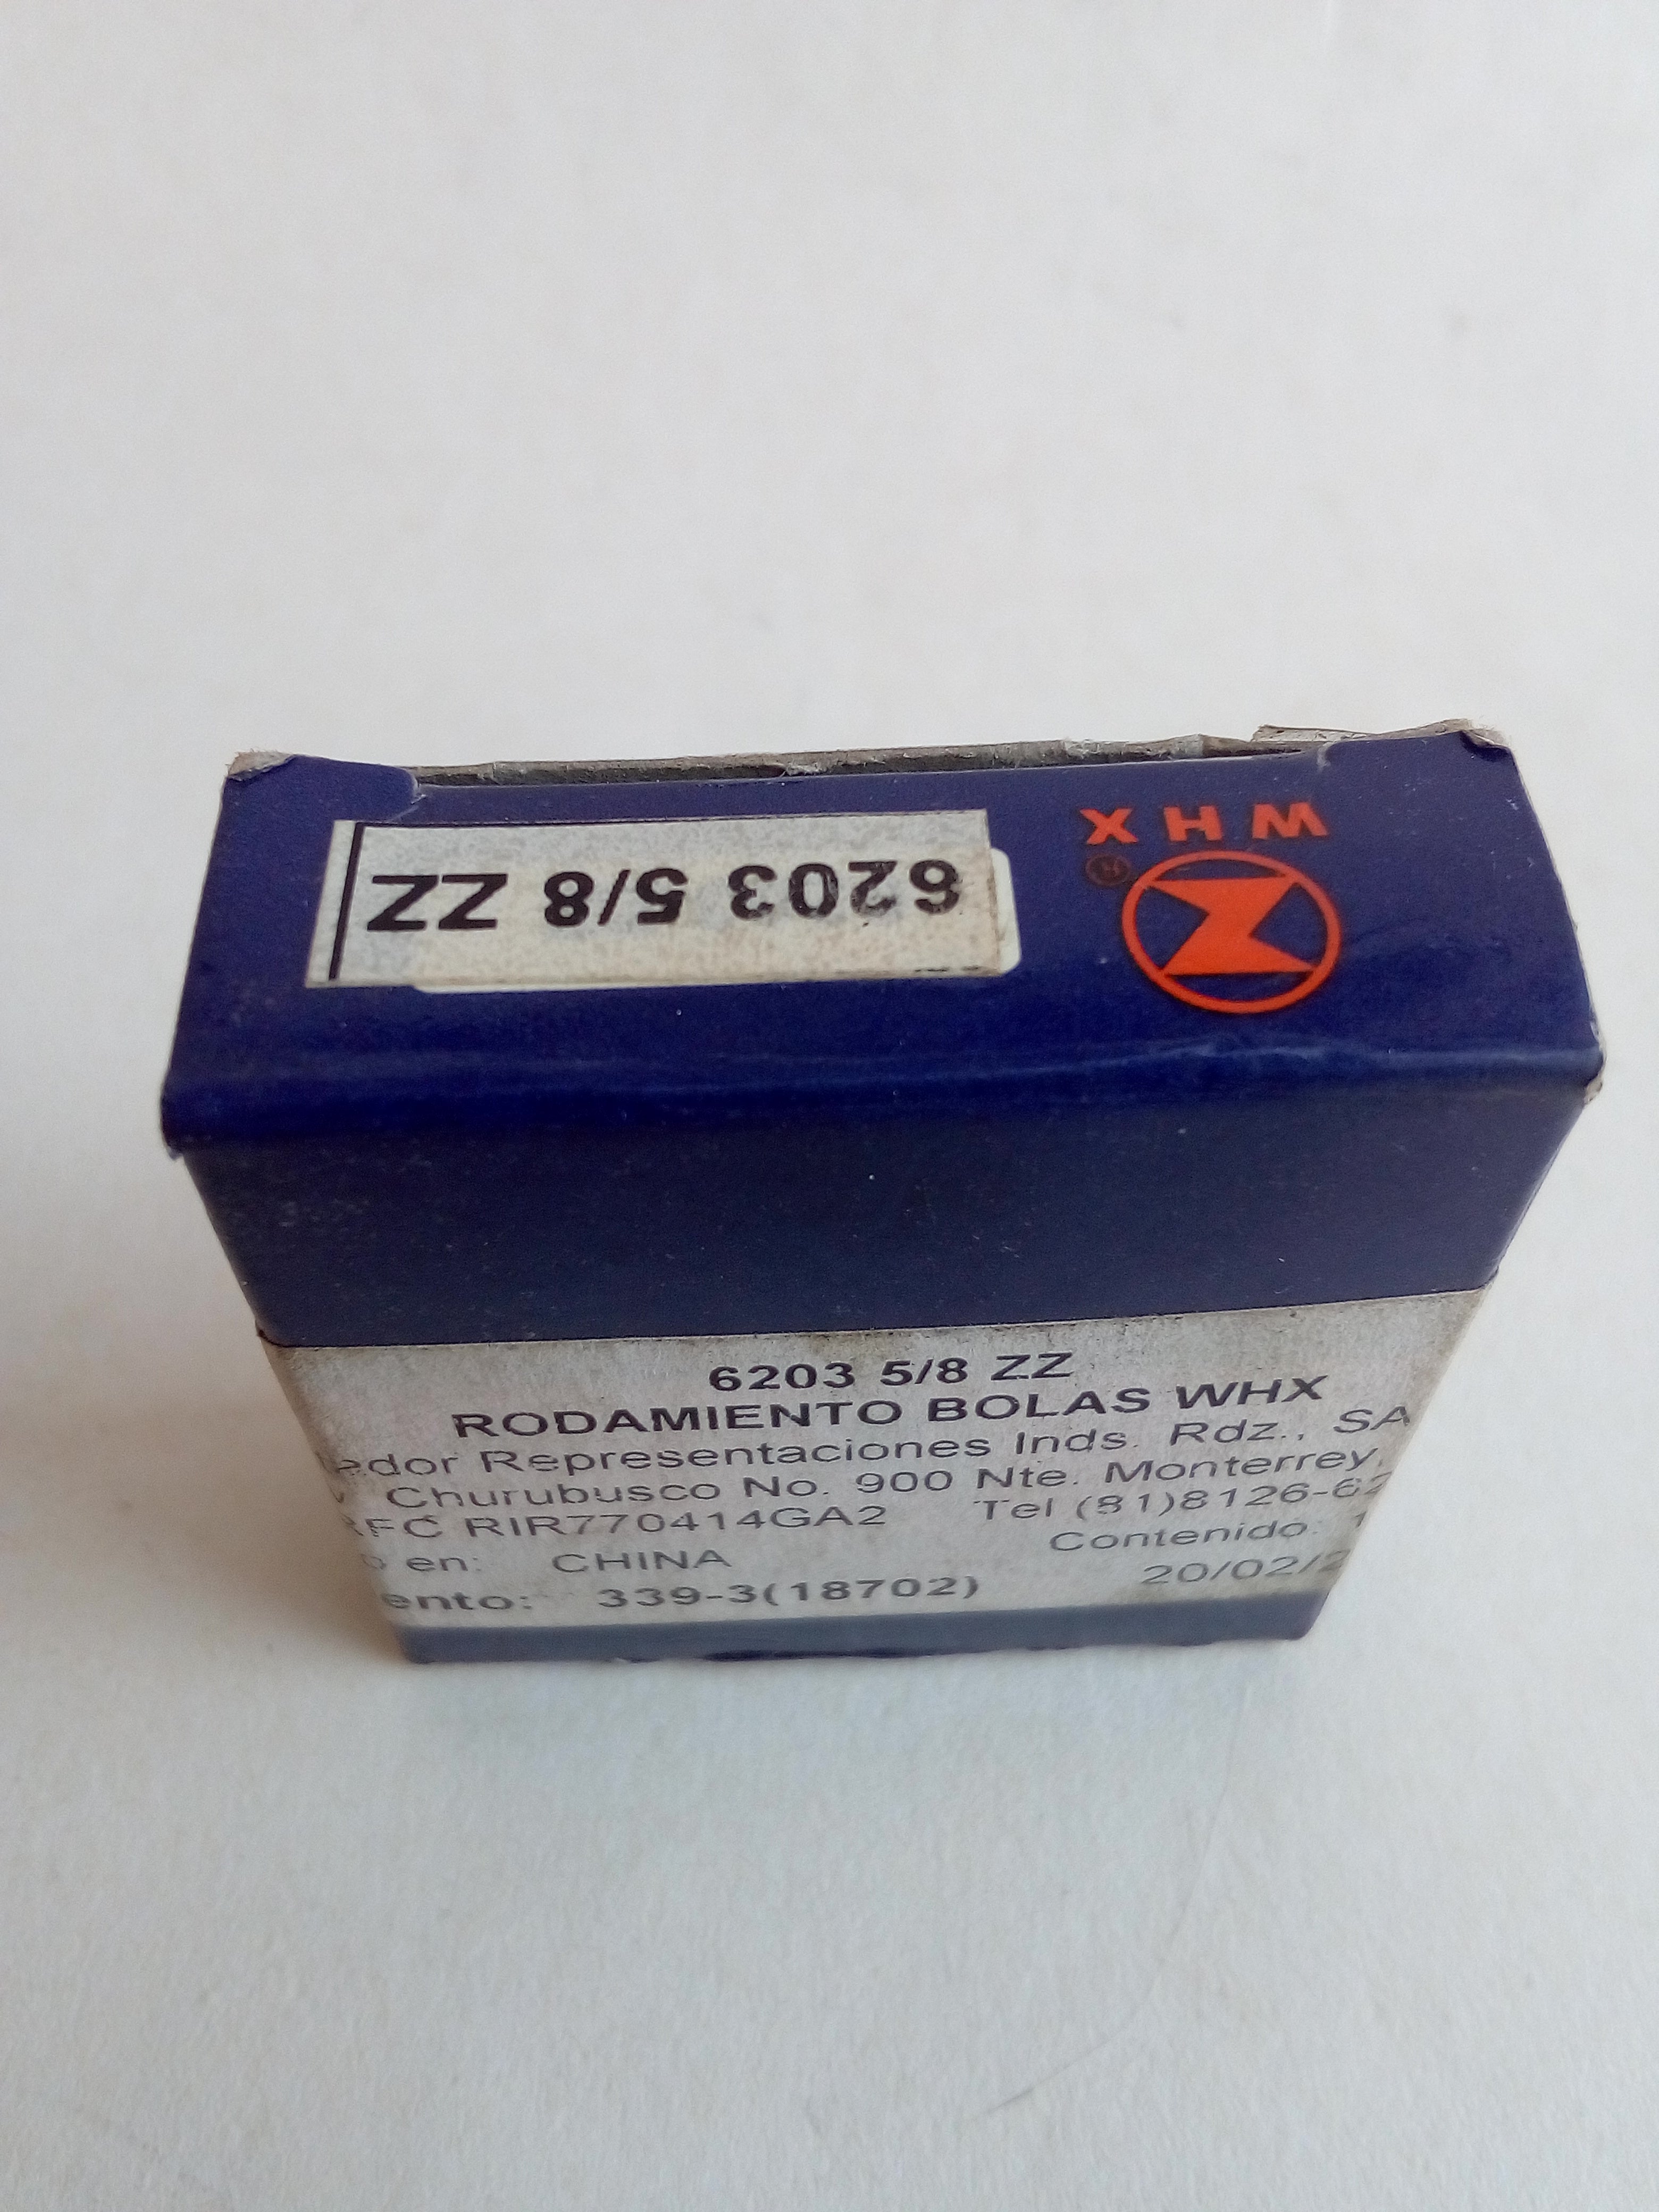 Rodamiento WHX 6203 5/8 ZZ